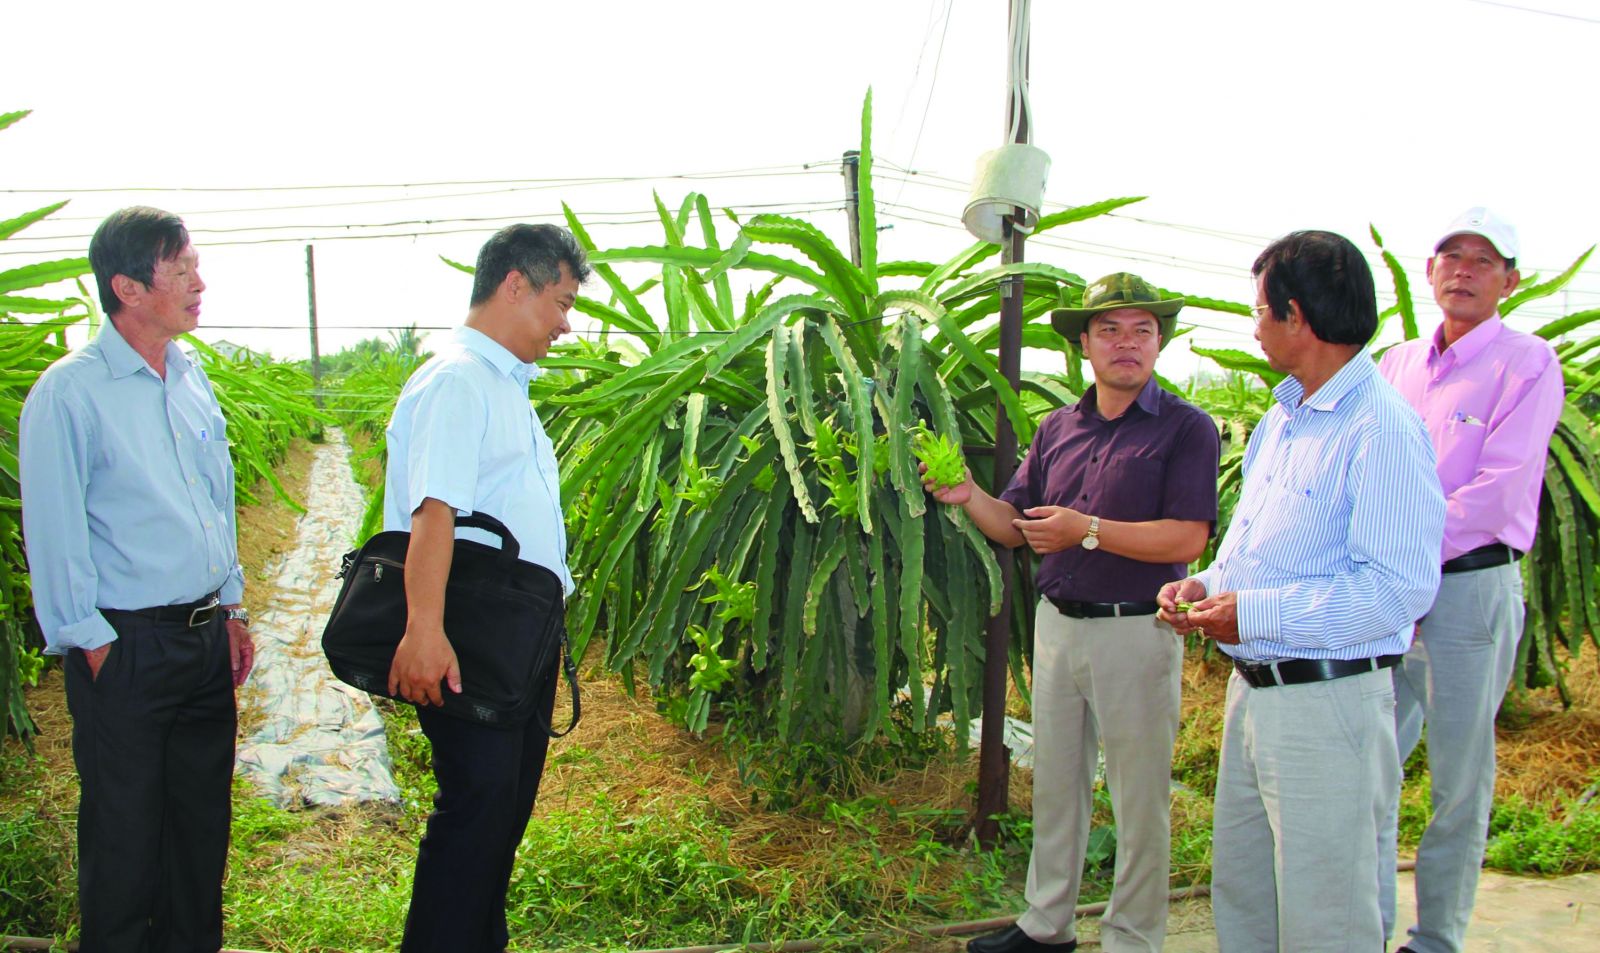  Cán bộ kỹ thuật hướng dẫn nông dân các quy trình trồng thanh long theo tiêu chuẩn GlobalGAP.